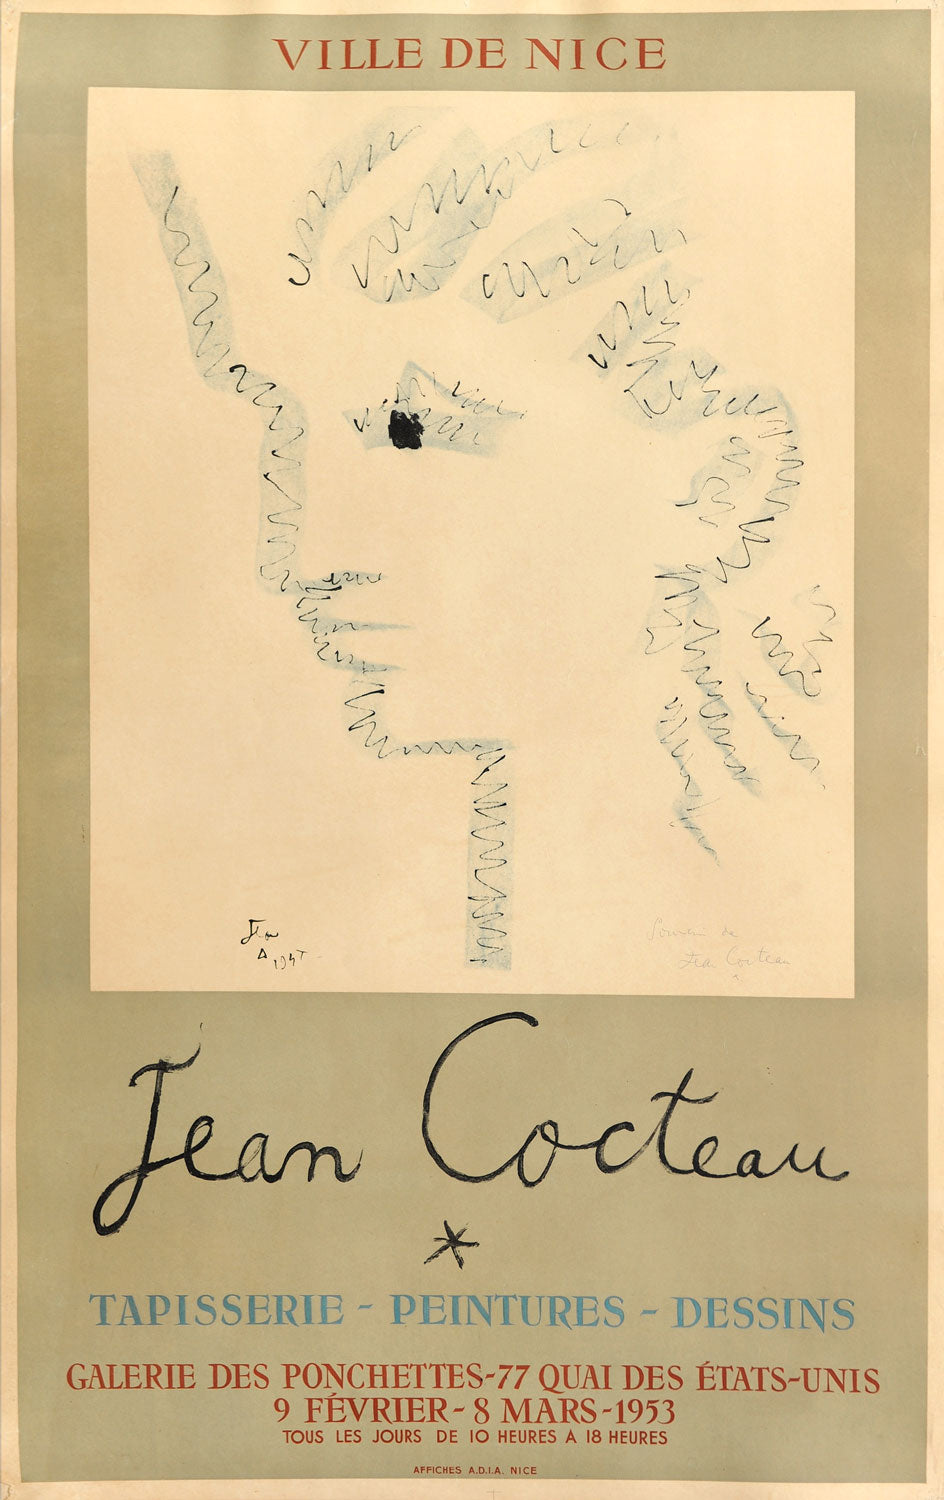 Jean Cocteau - Ville de Nice